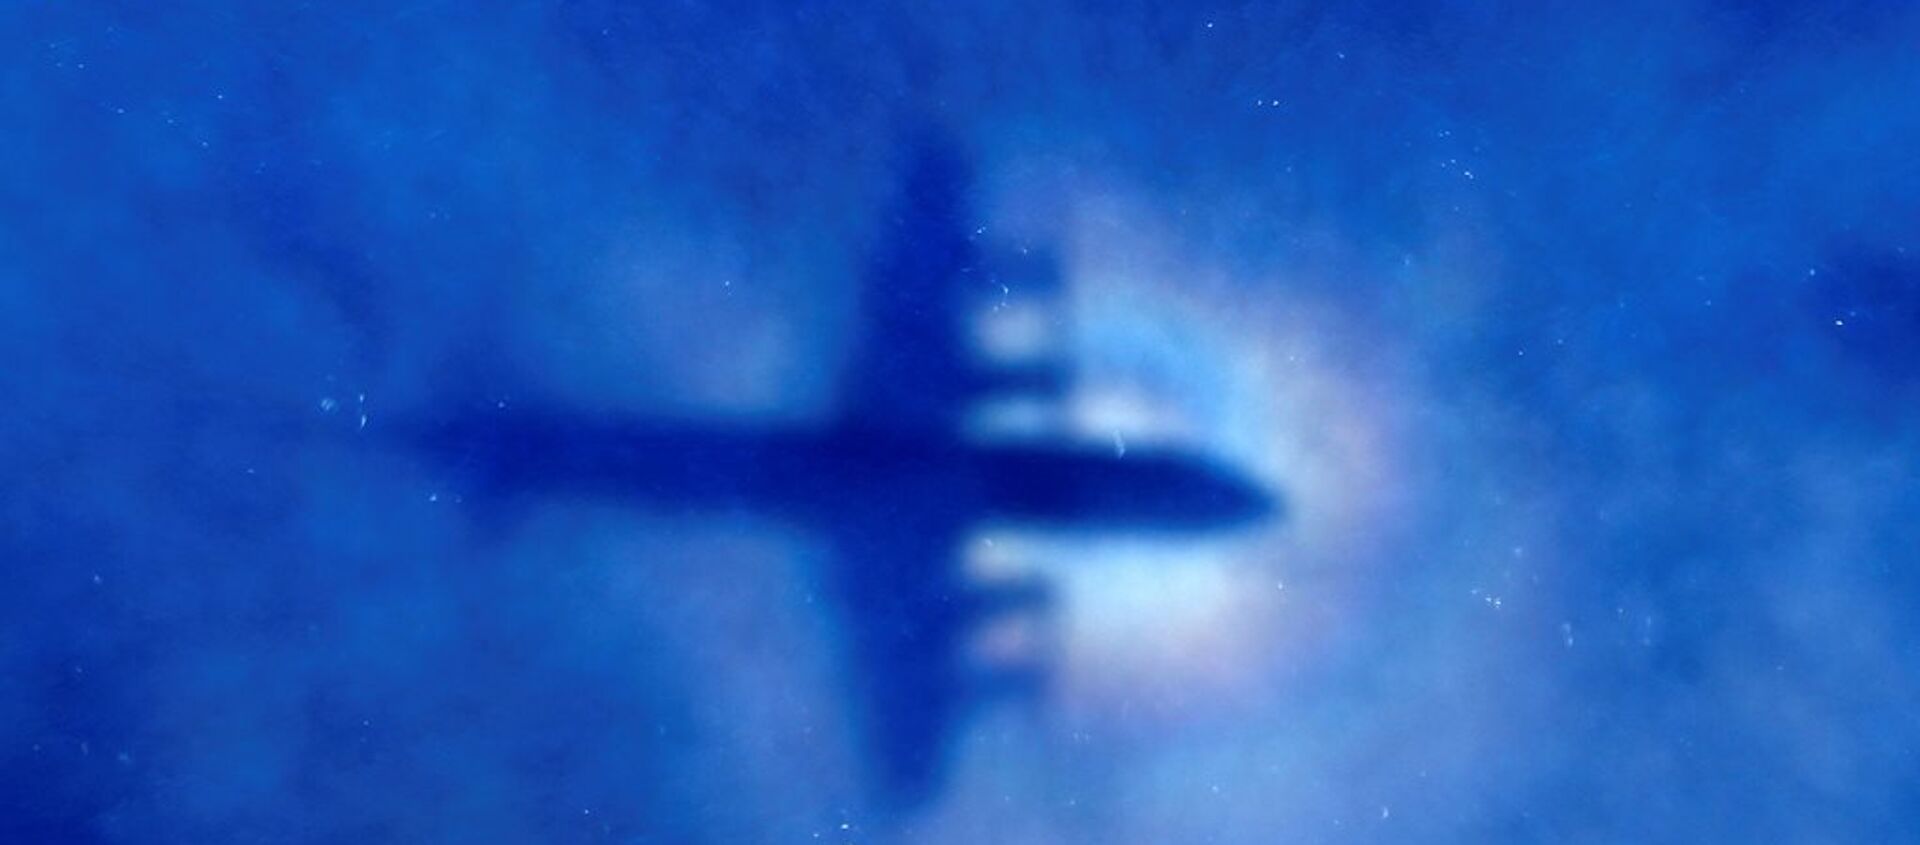 Malezya Hava Yolları'na ait MH370 sefer sayılı uçak - Sputnik Türkiye, 1920, 07.01.2019